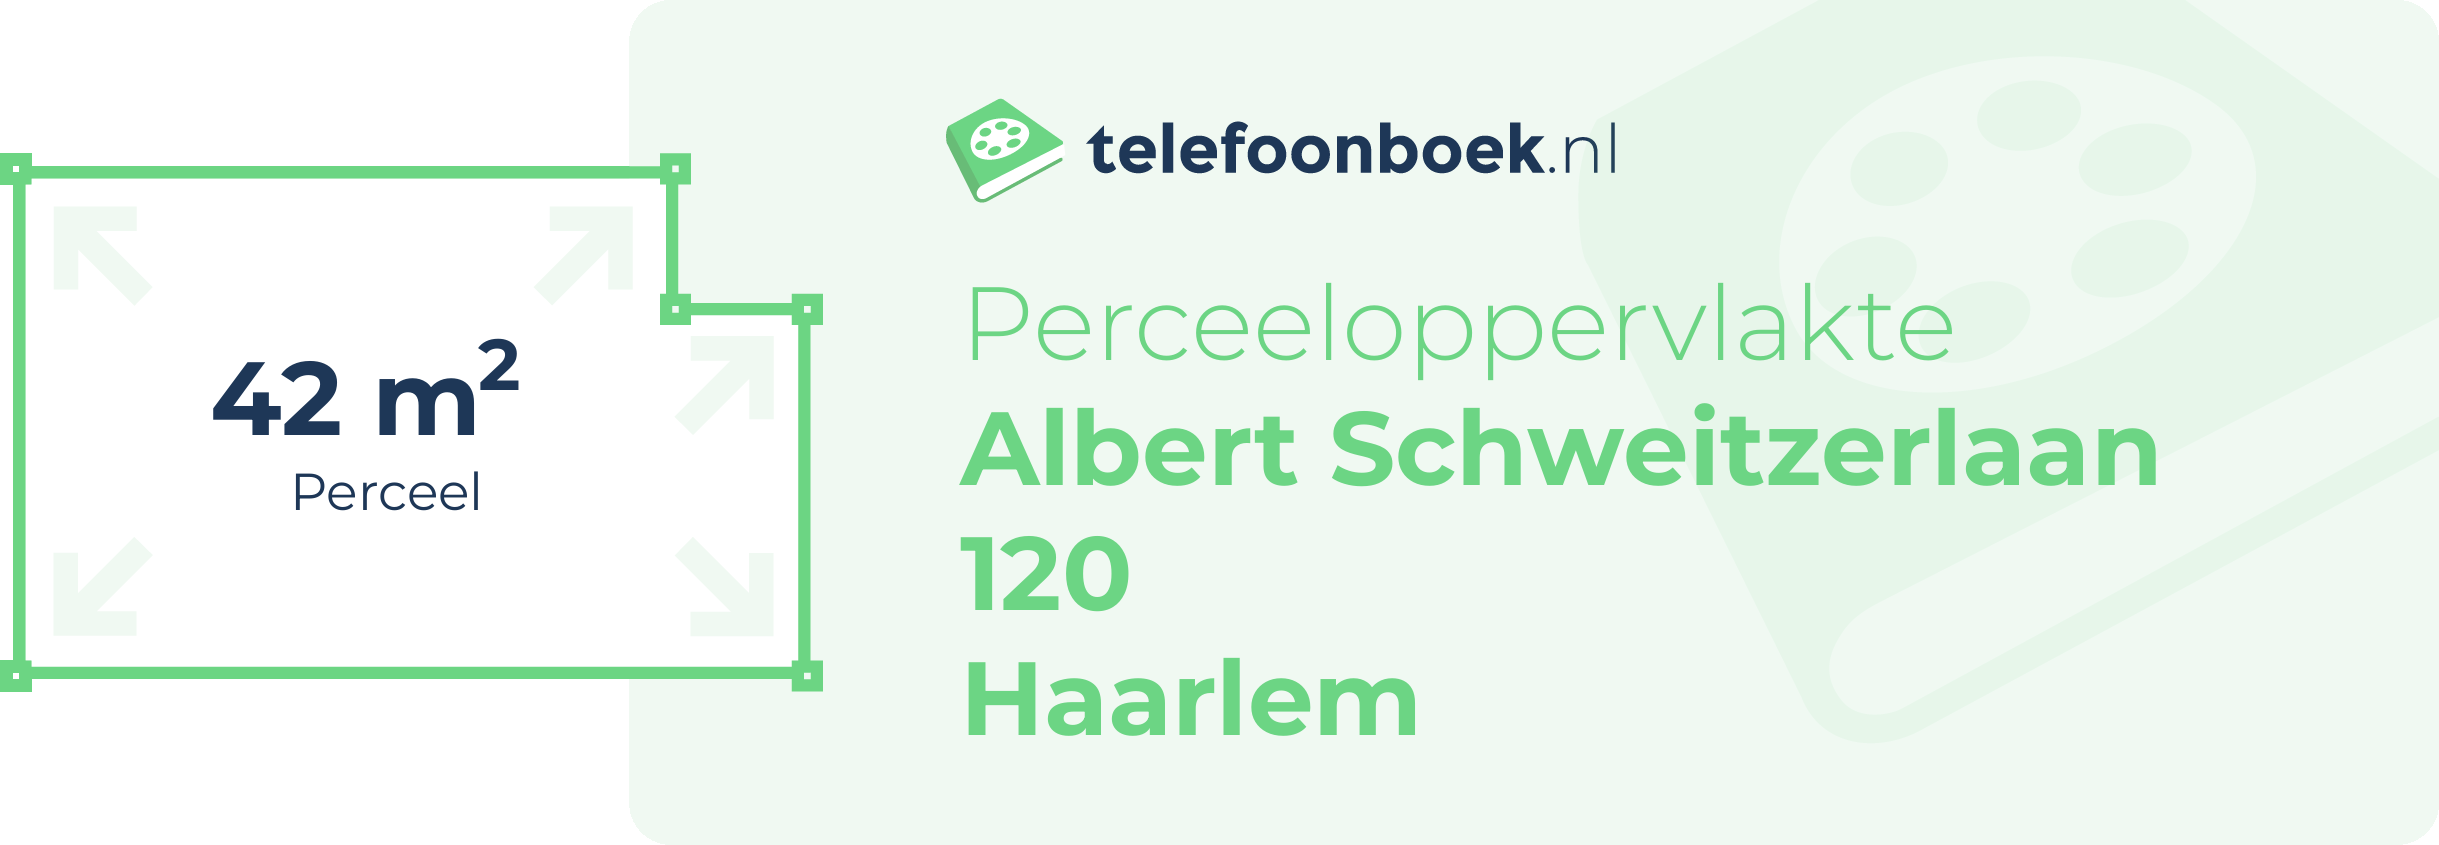 Perceeloppervlakte Albert Schweitzerlaan 120 Haarlem